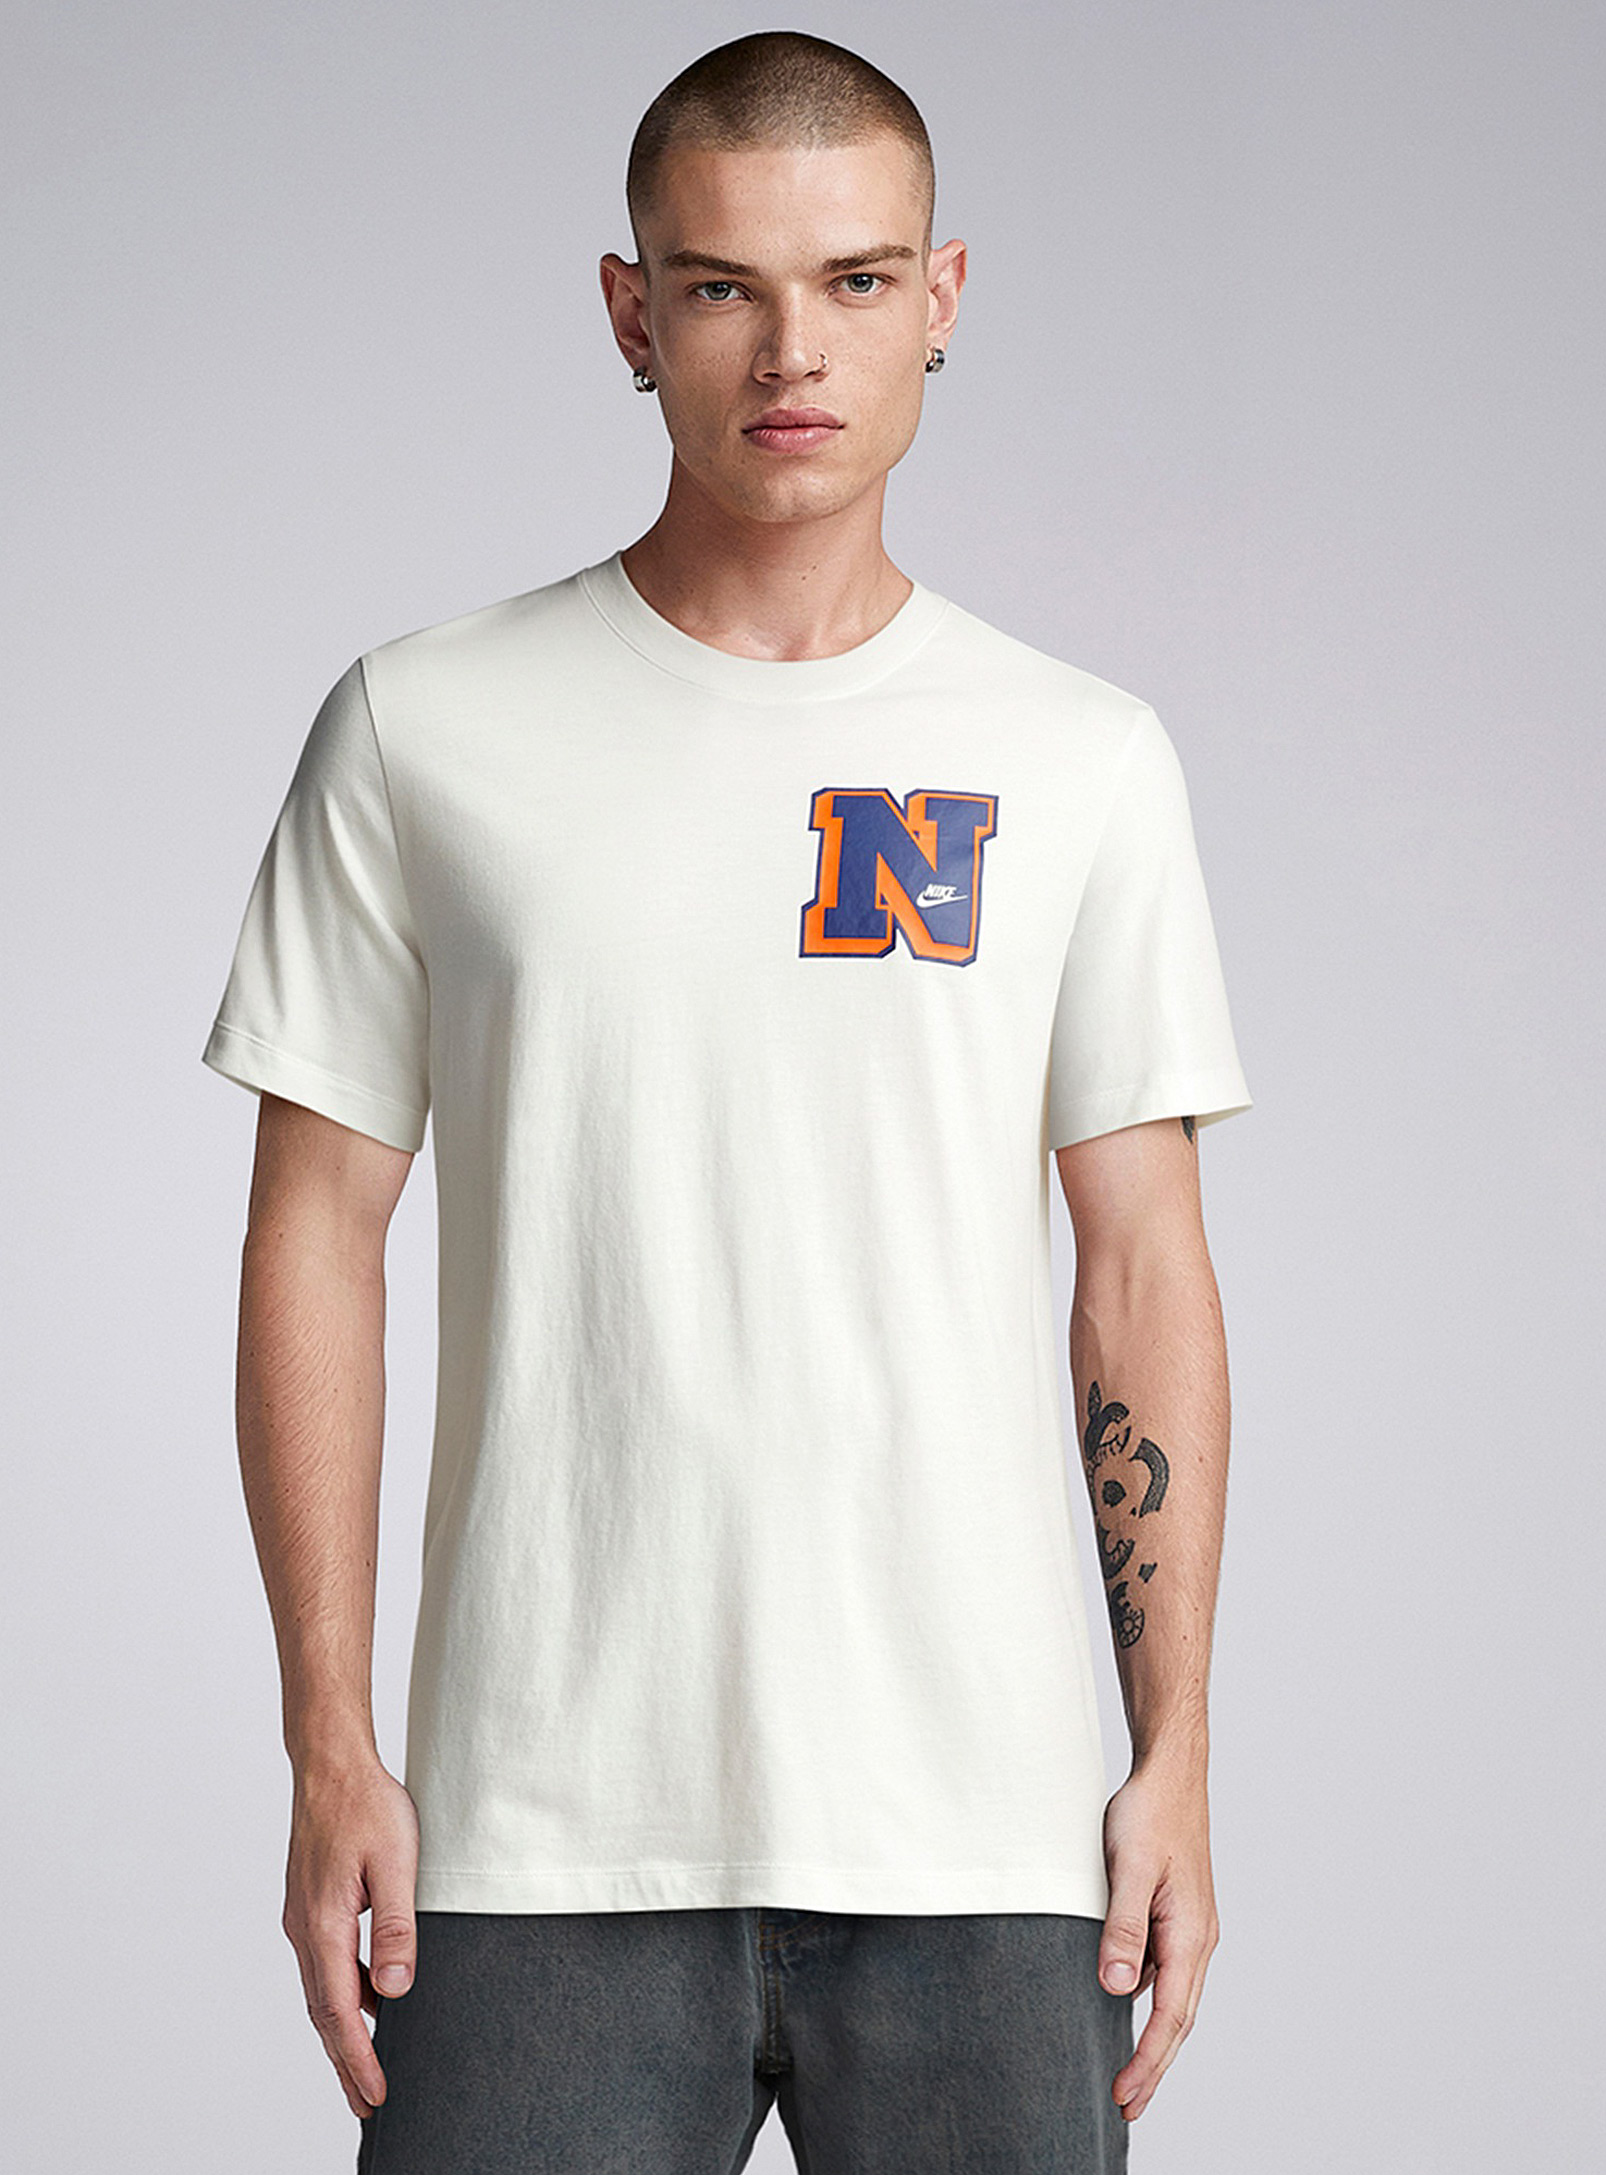 Nike - Men's Varsity logo T-shirt